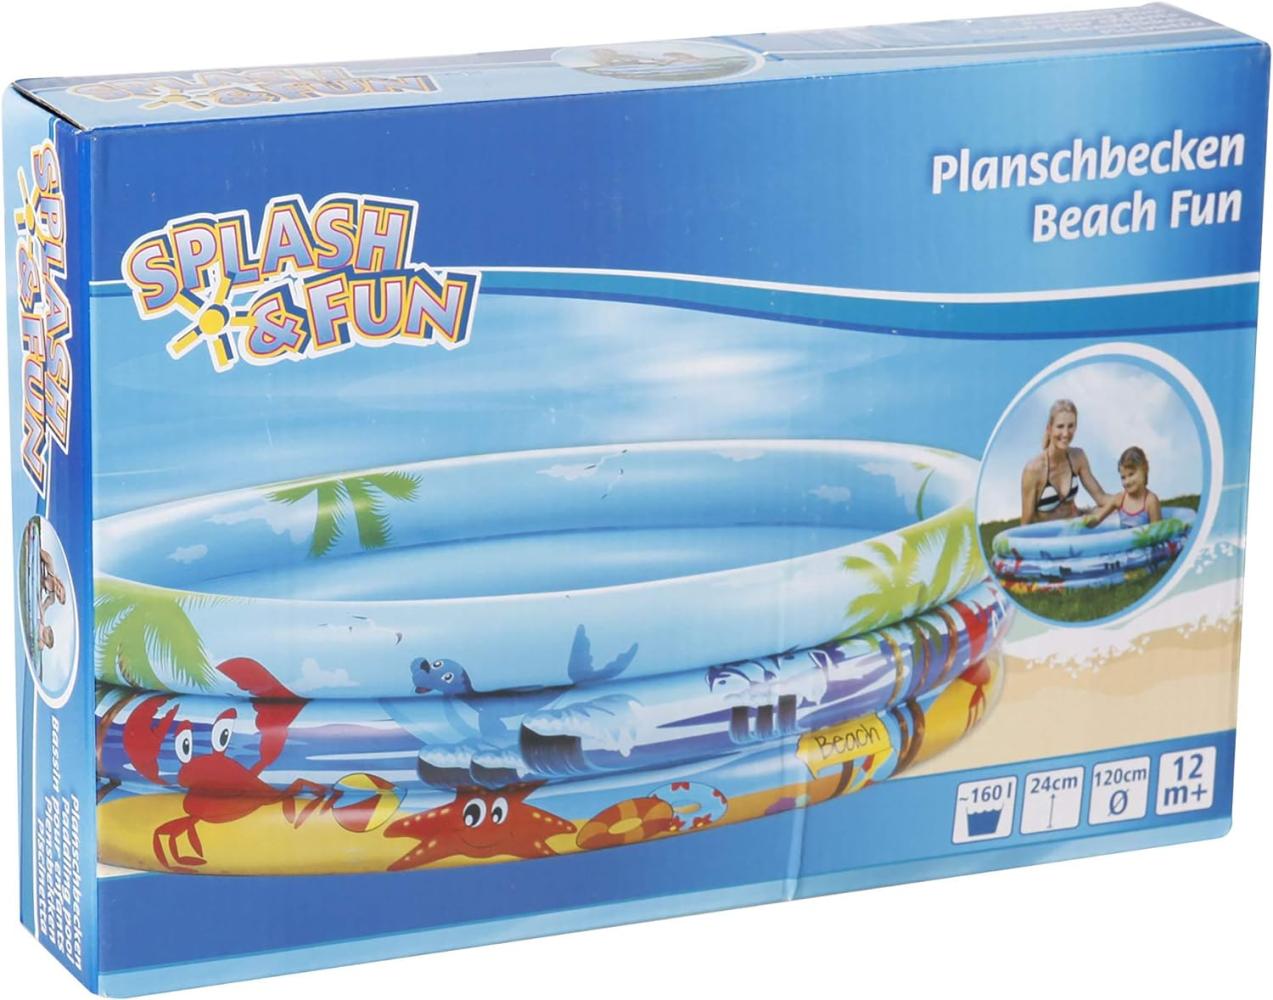 Splash & Fun Planschbecken Beach 120 cm Bild 1